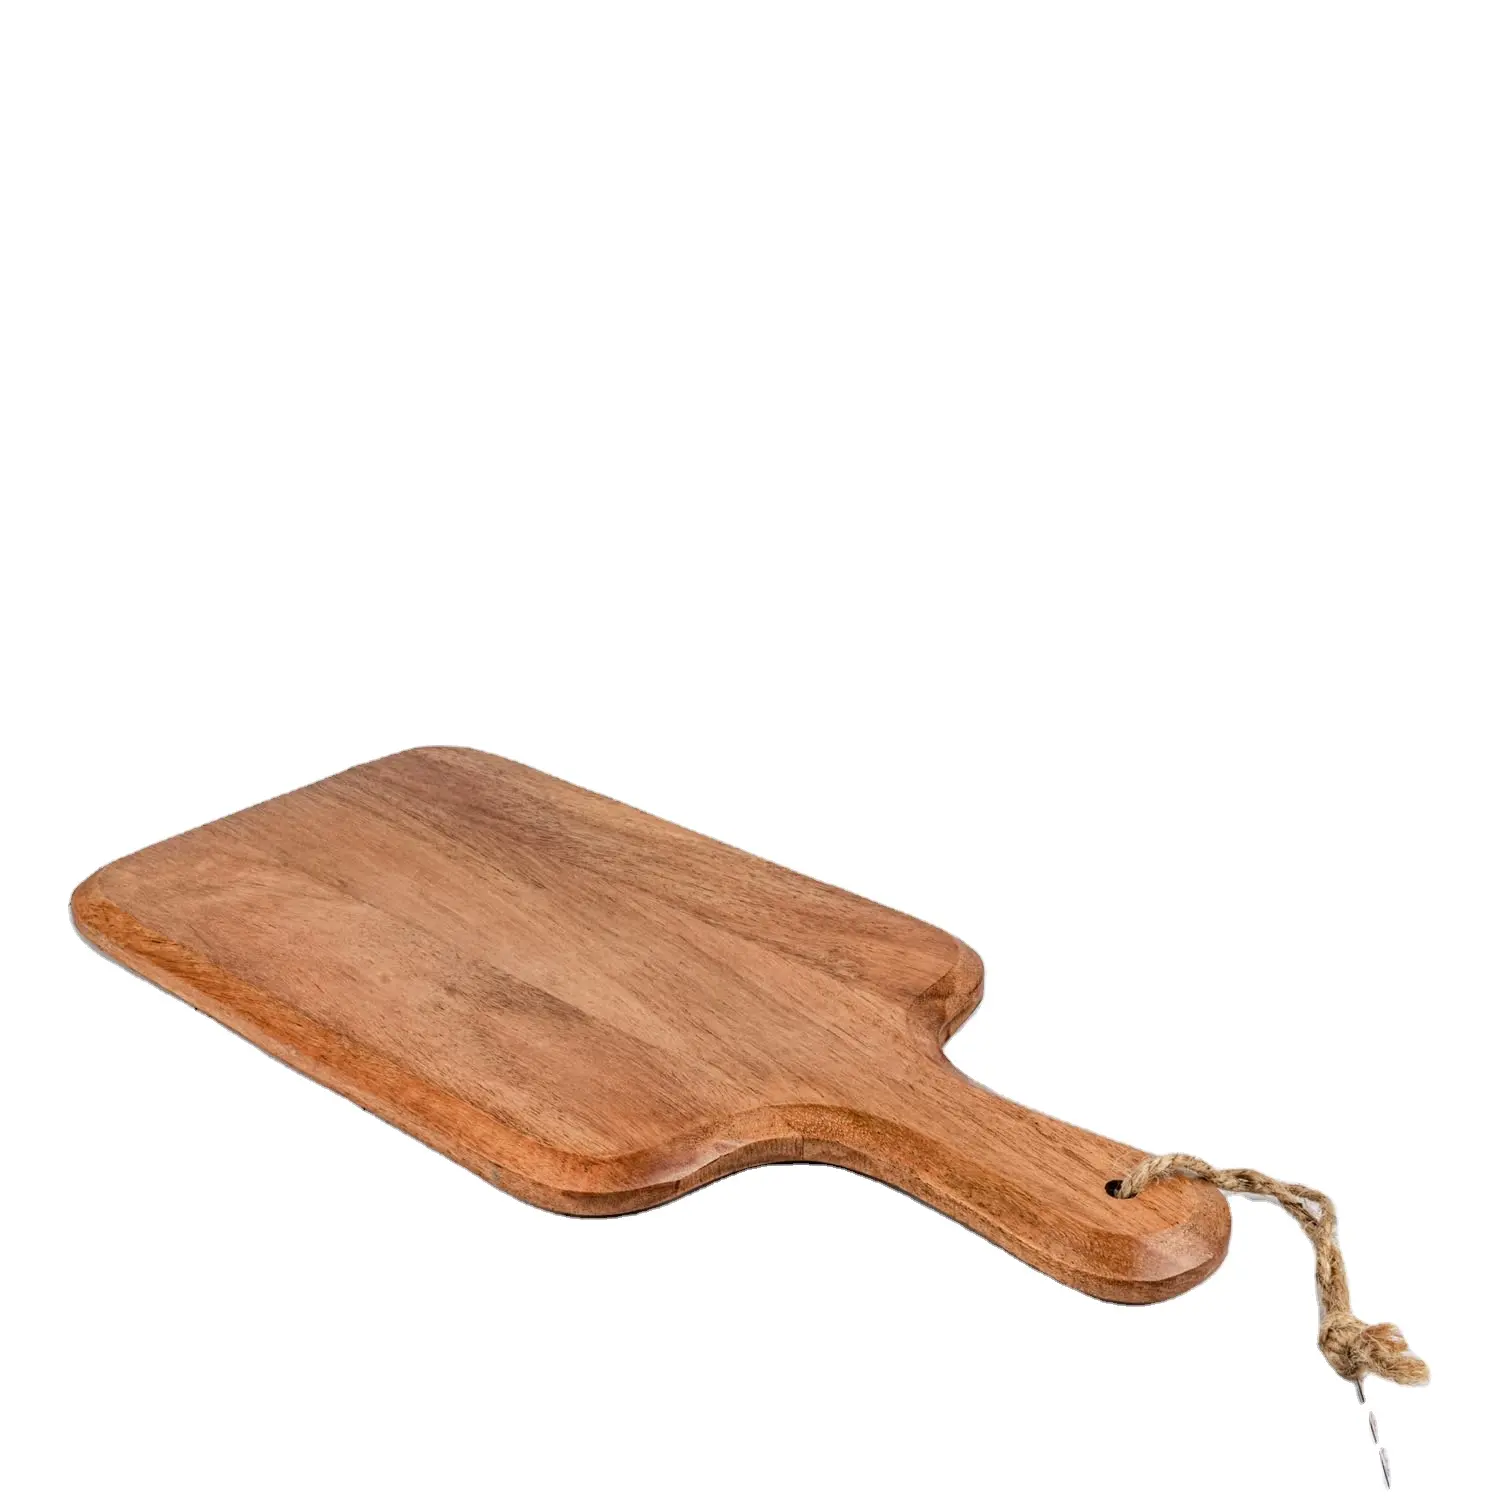 ठोस बबूल की लकड़ी खाना परोसने बोर्ड लकड़ी आयताकार काट बोर्ड मांस सब्जियों के लिए पनीर काटने बोर्ड